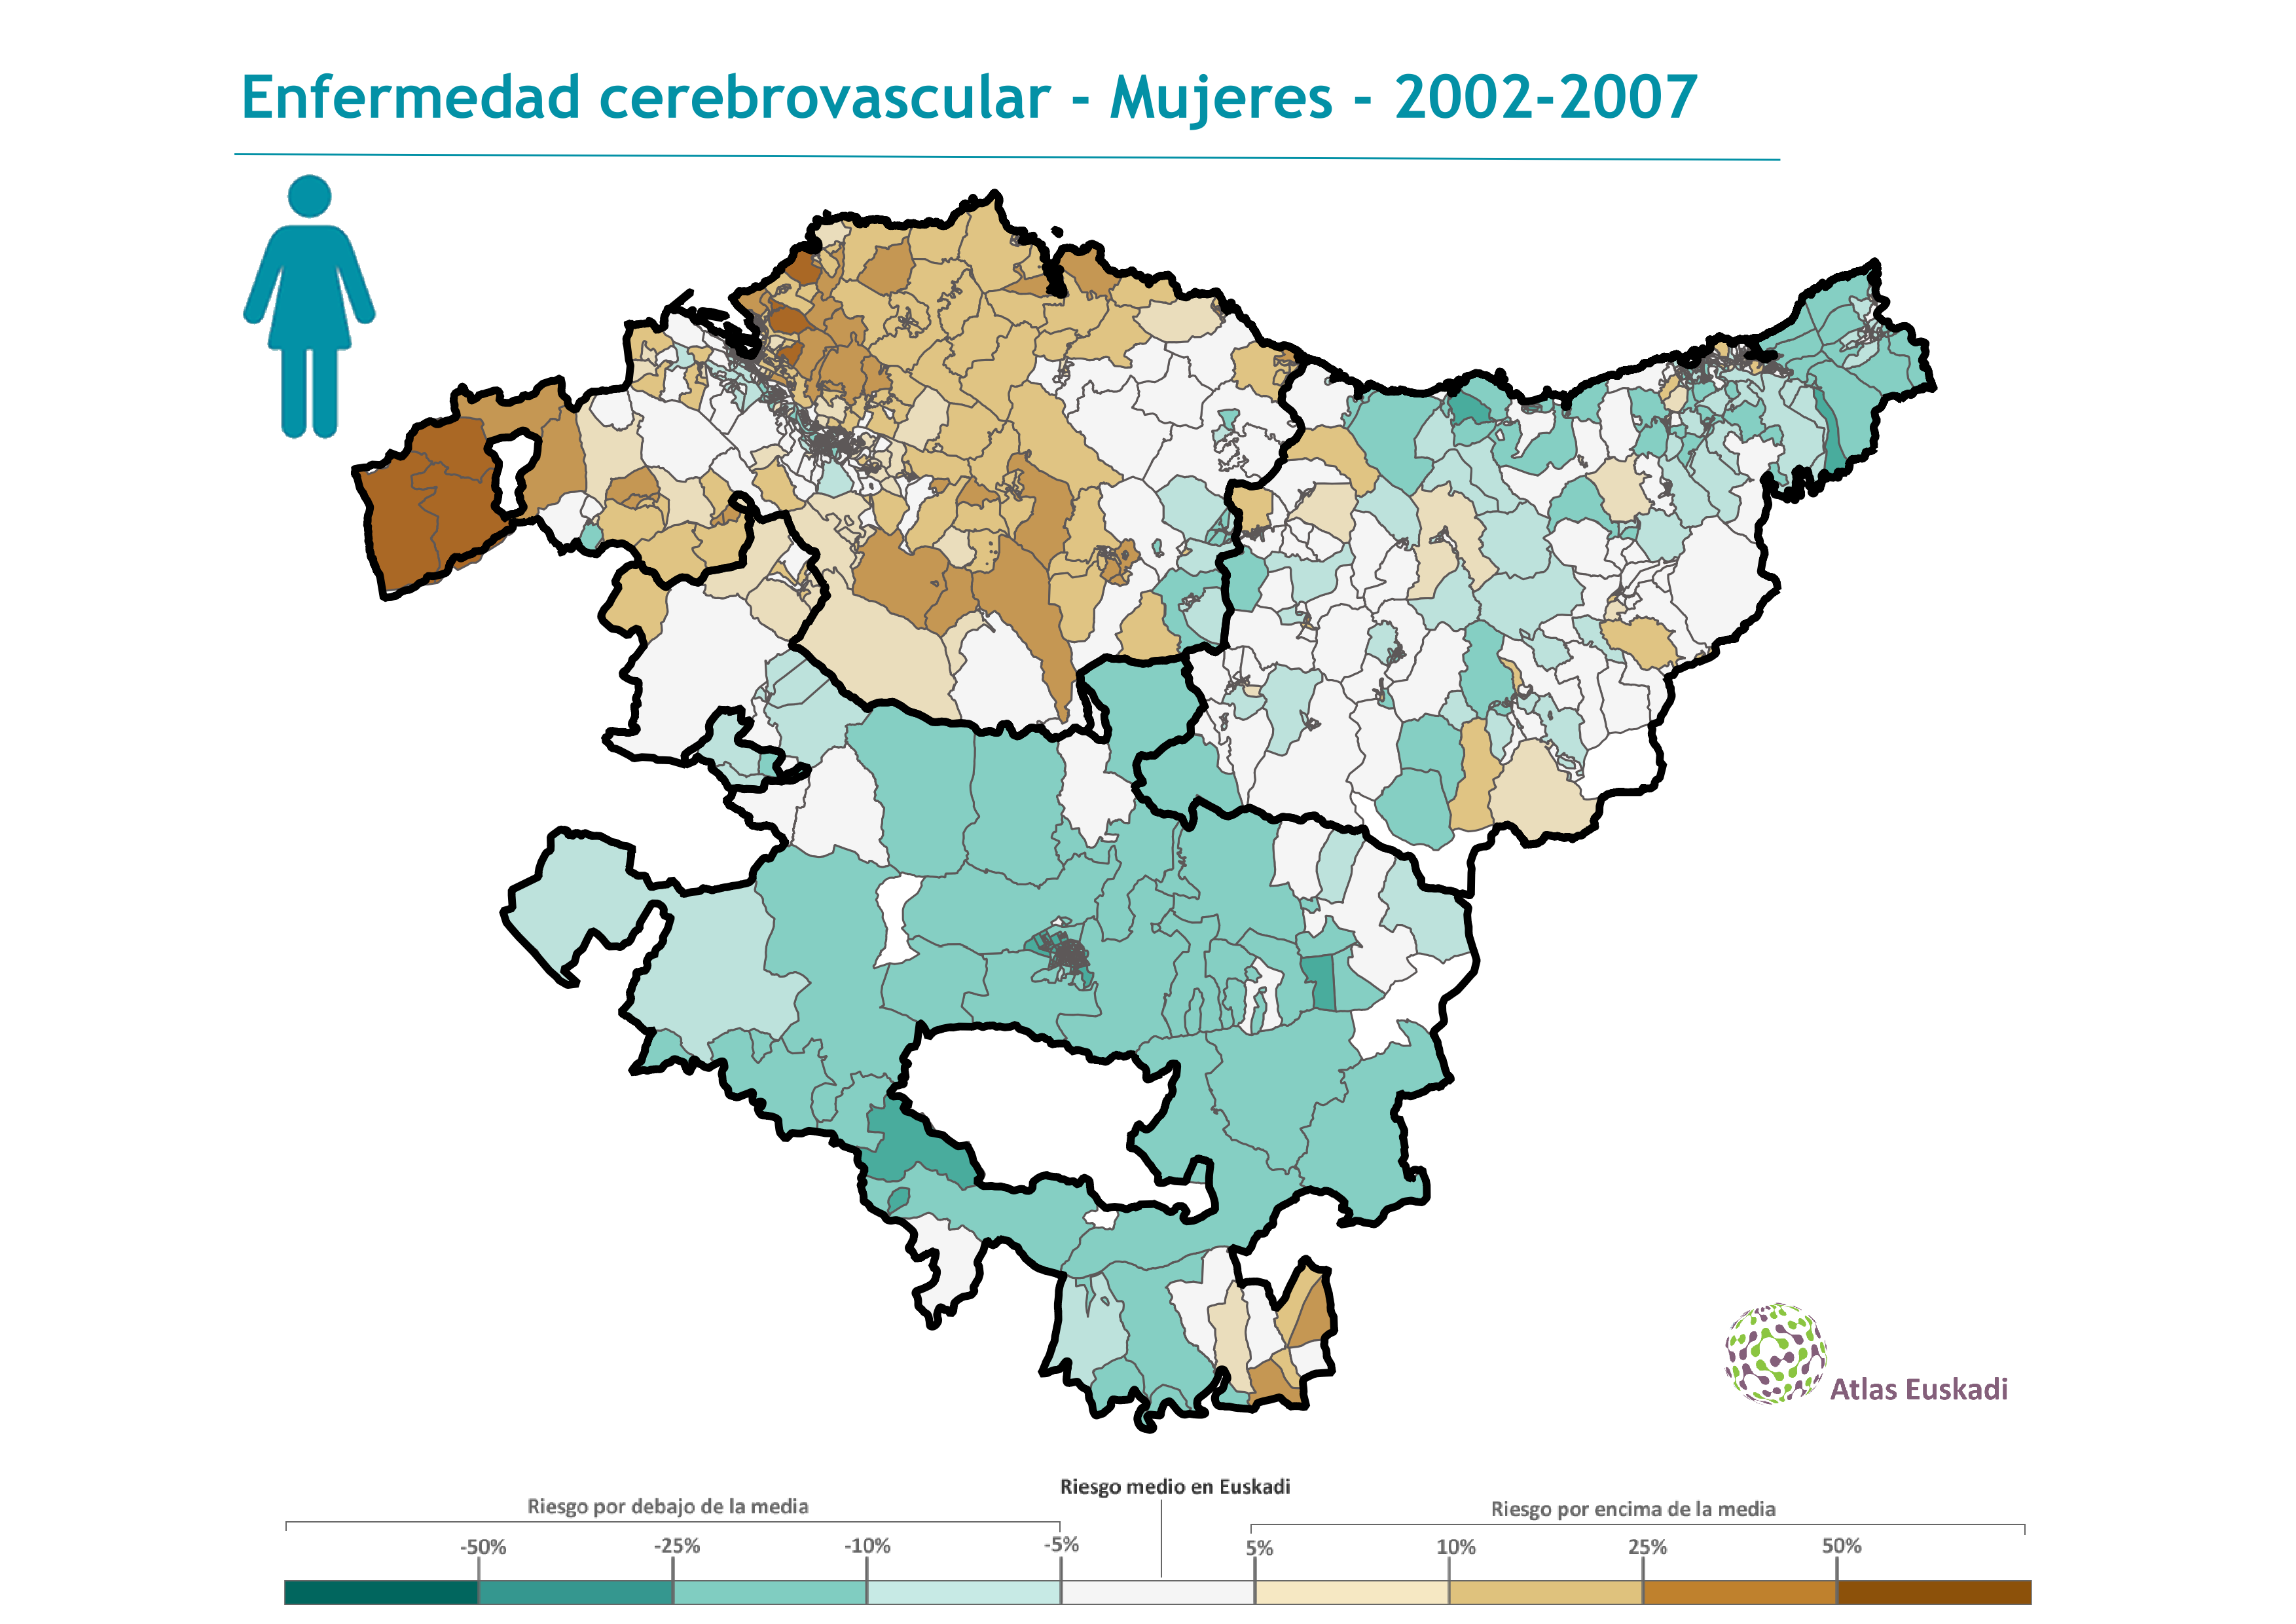 Enfermedad cerebrovascular mujeres  2002-2007 Euskadi